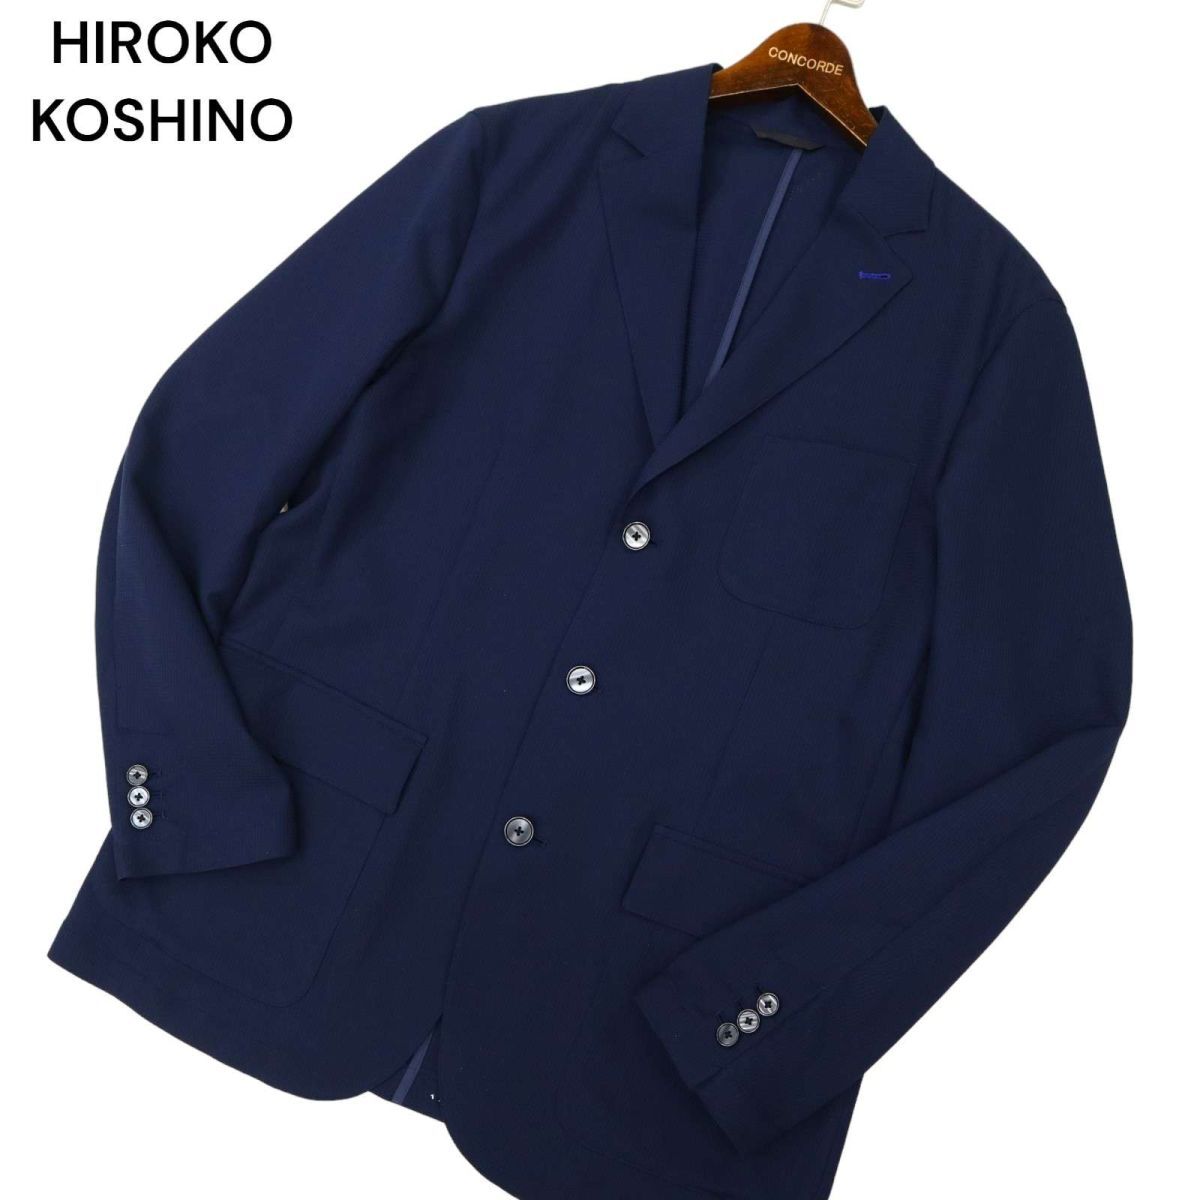 HIROKO KOSHINO homme collection ヒロココシノ 春夏 3B テーラード ジャケット Sz.LL メンズ ネイビー 大きいサイズ C4T01497_2#Mの画像1